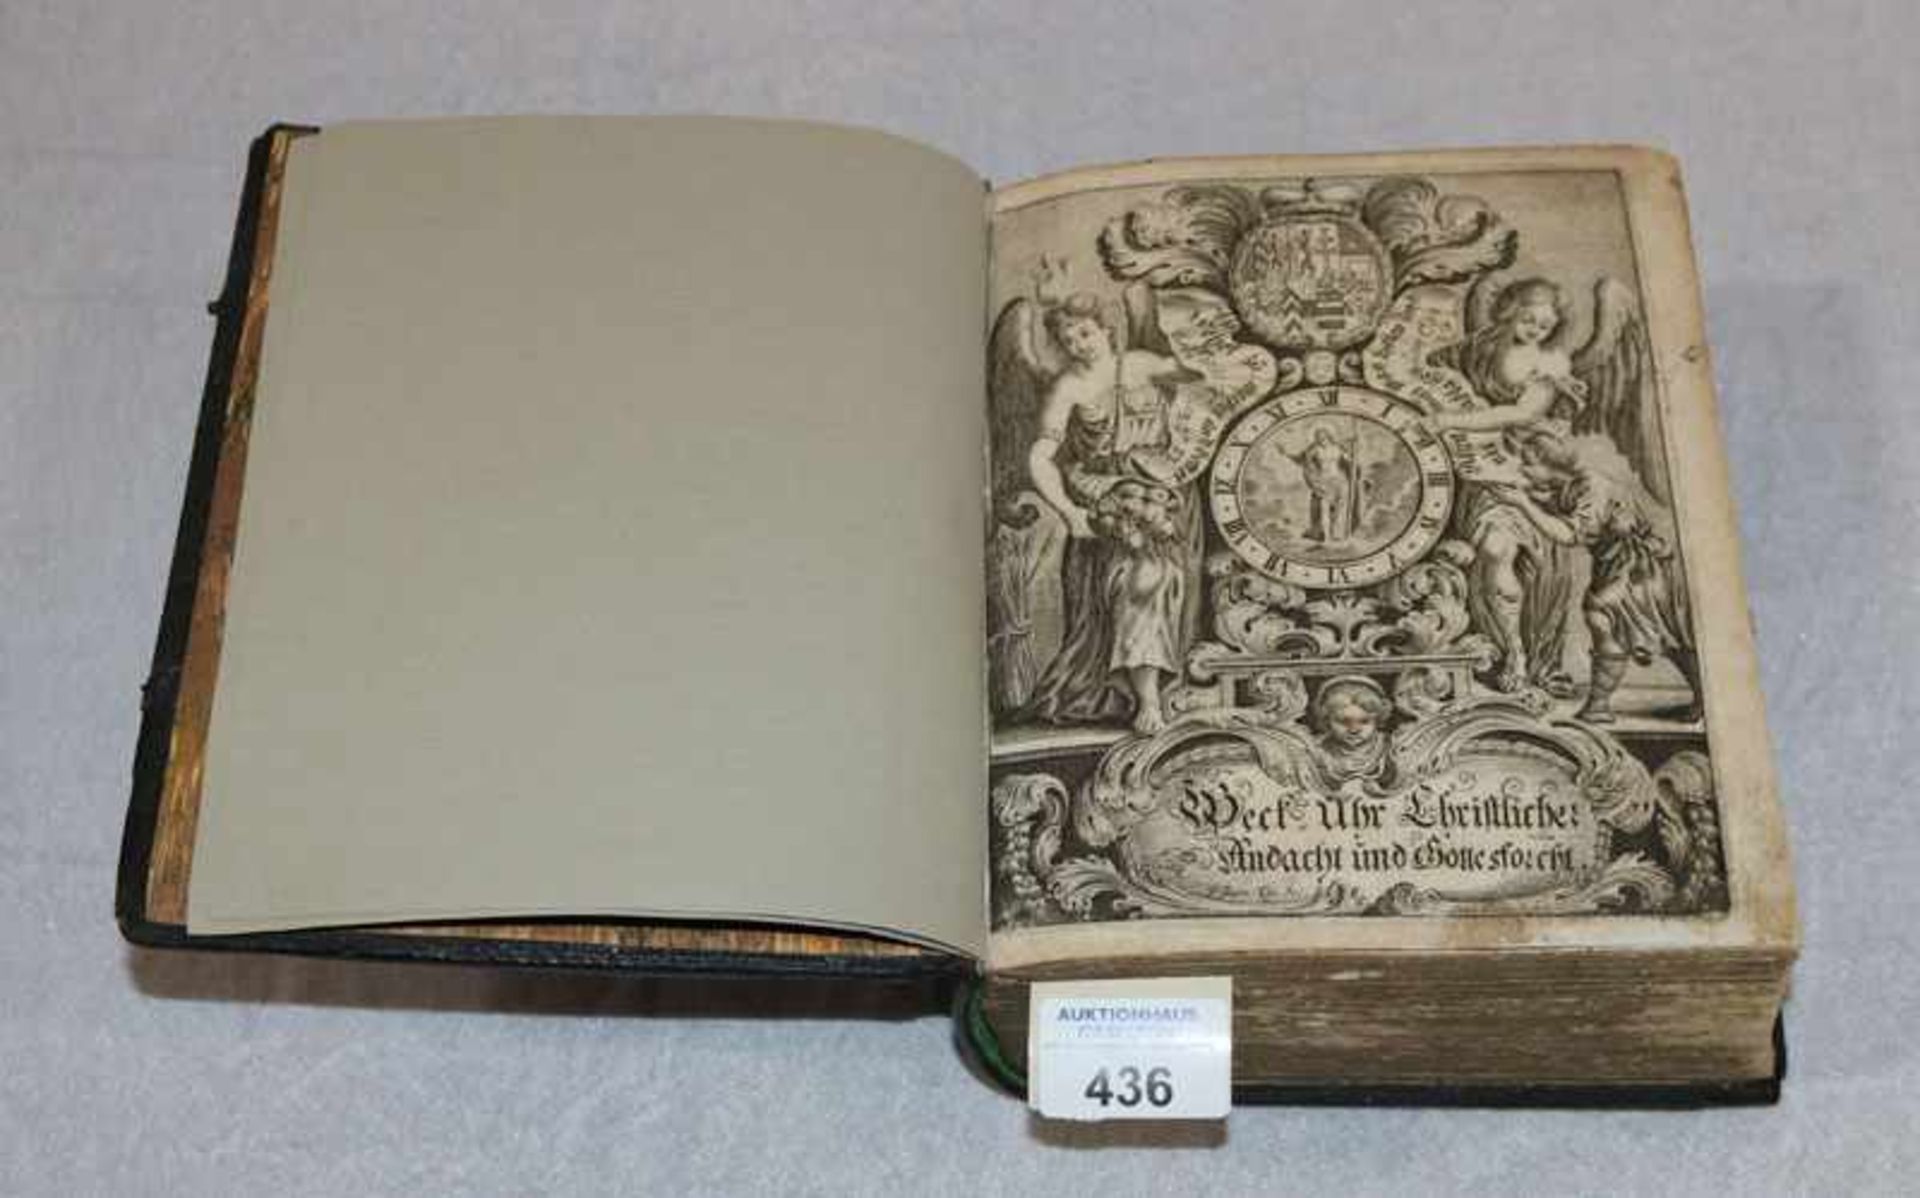 Buch 'Weck-Uhr Christliche Andacht und Gottesforcht', datiert 1689, ohne Abbildungen, Verschlüße